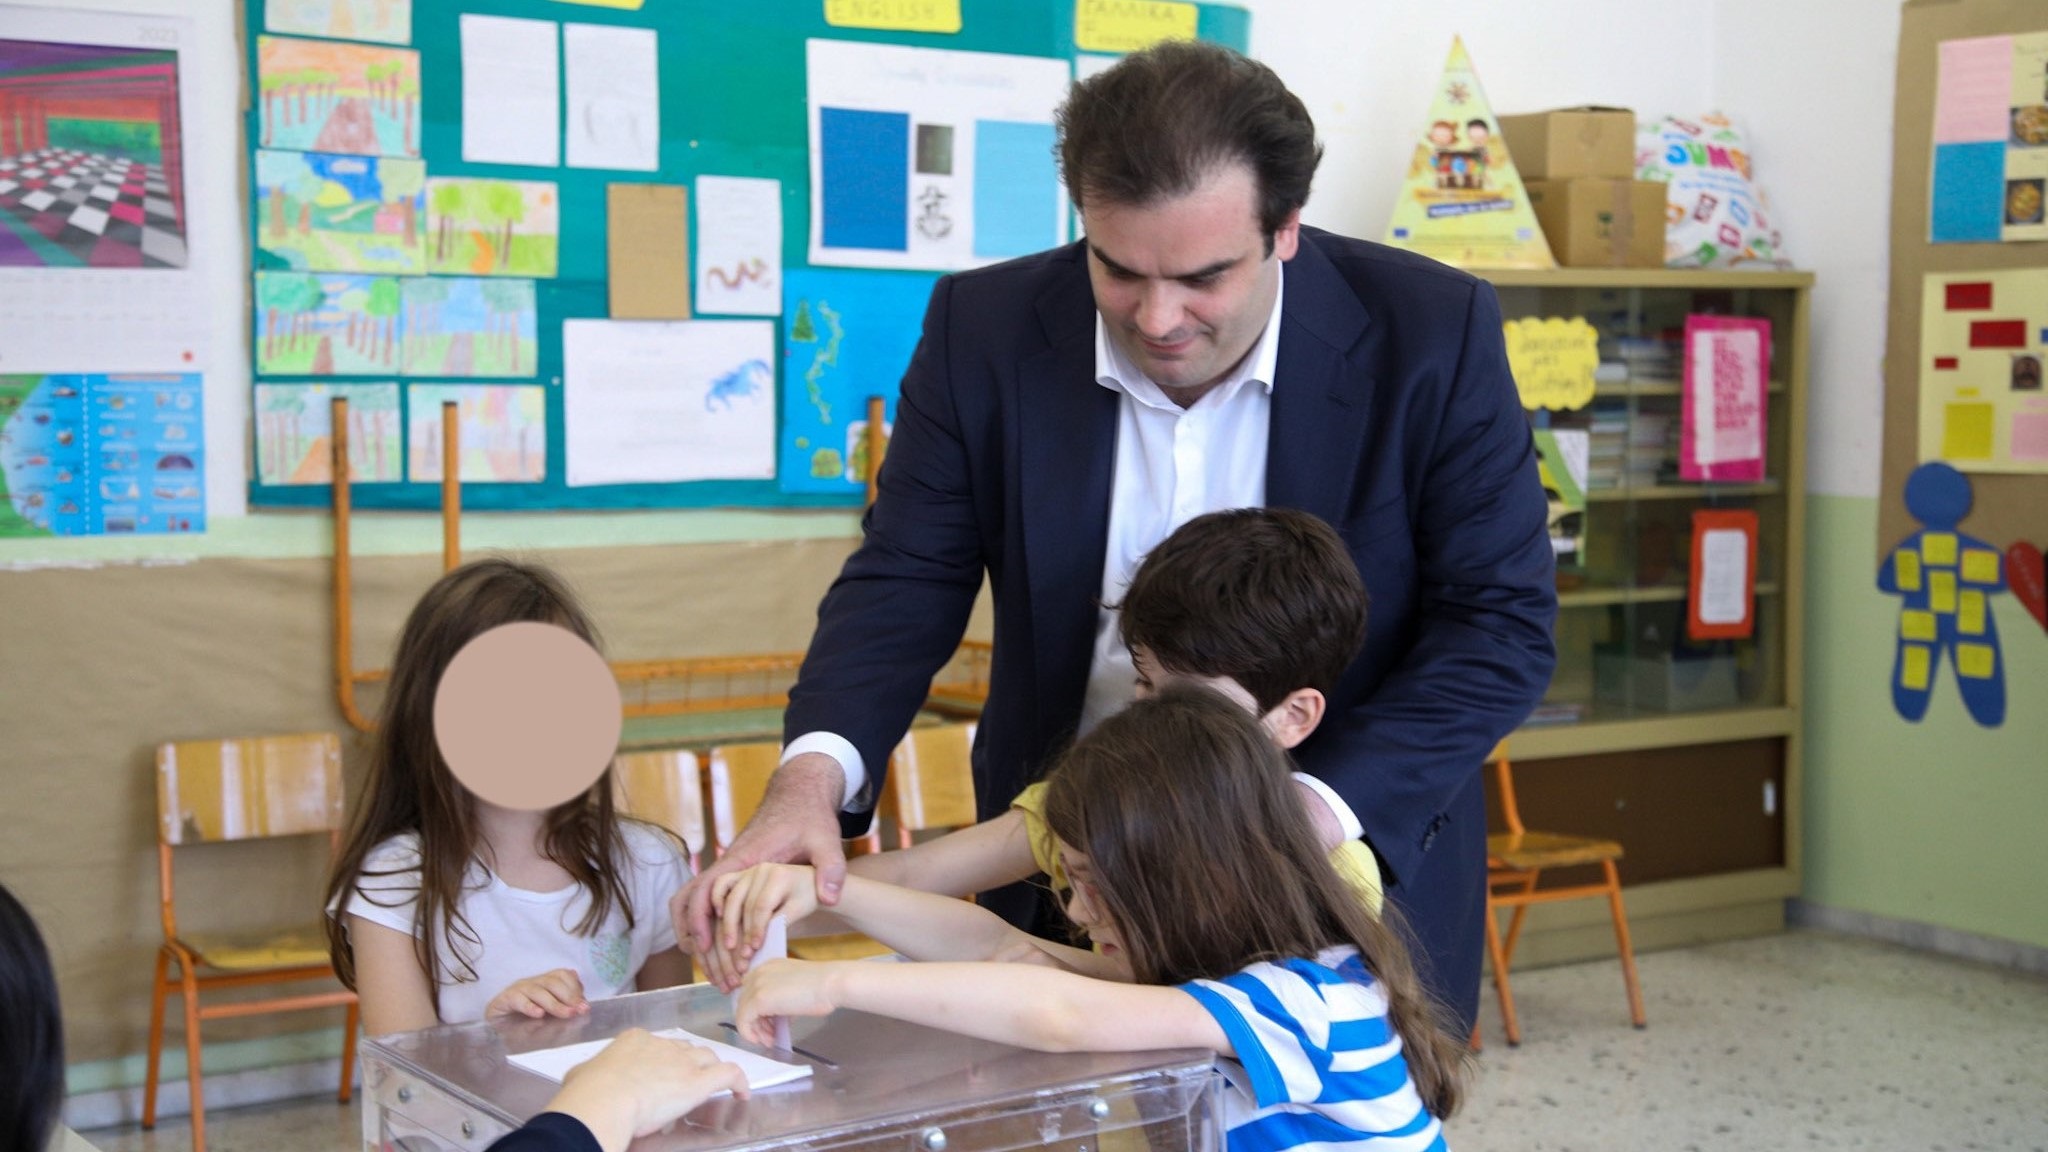 Εκλογές: Ο Κυριάκος Πιερρακάκης ψήφισε με τα τρία παιδιά του - Έριξαν μαζί τον φάκελο στην κάλπη